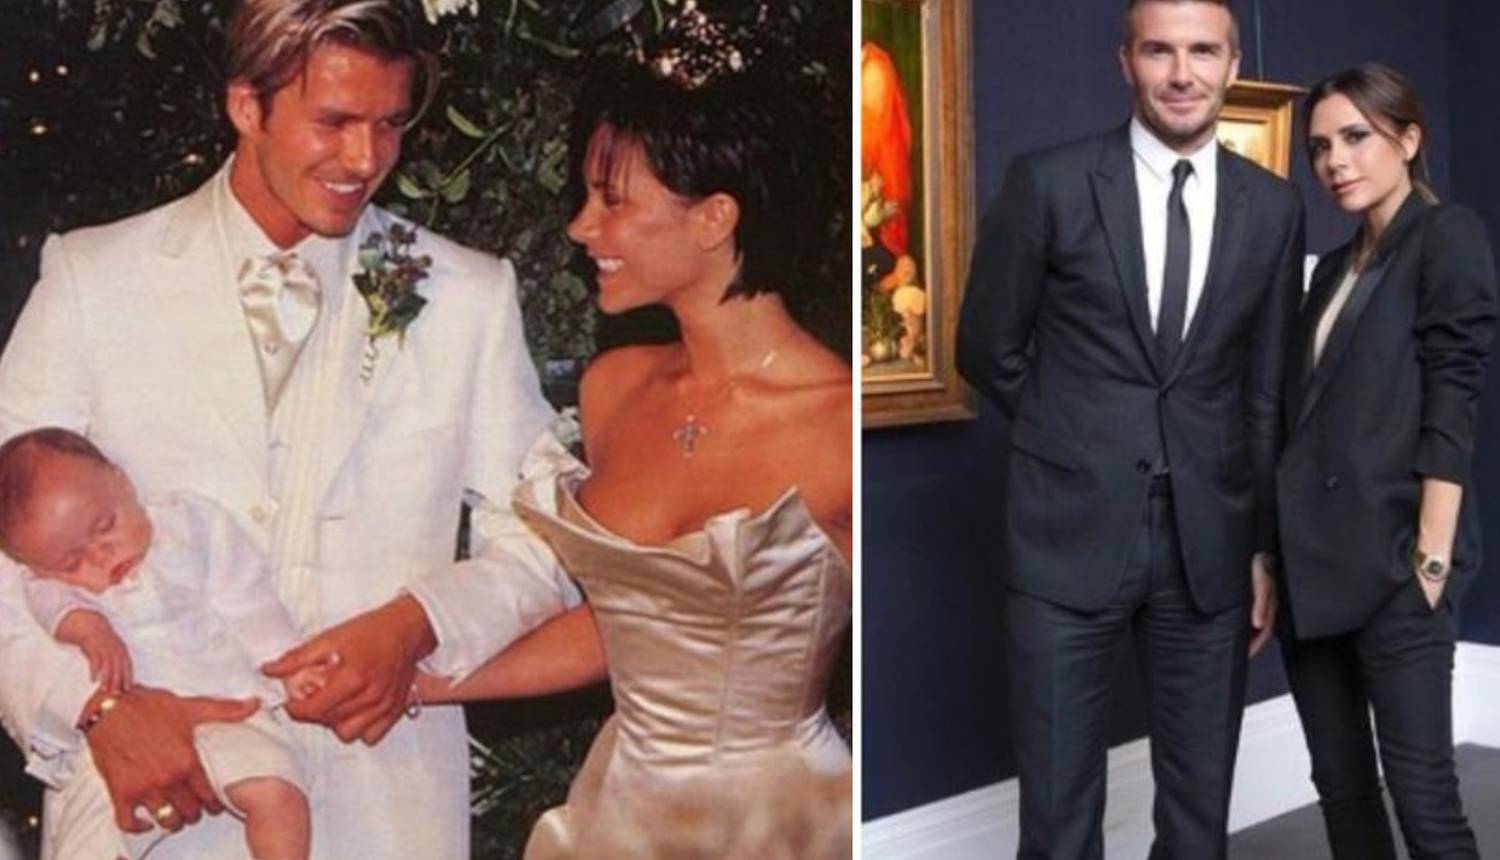 19 godina braka: Beckham 14 puta kupio zaručnički prsten